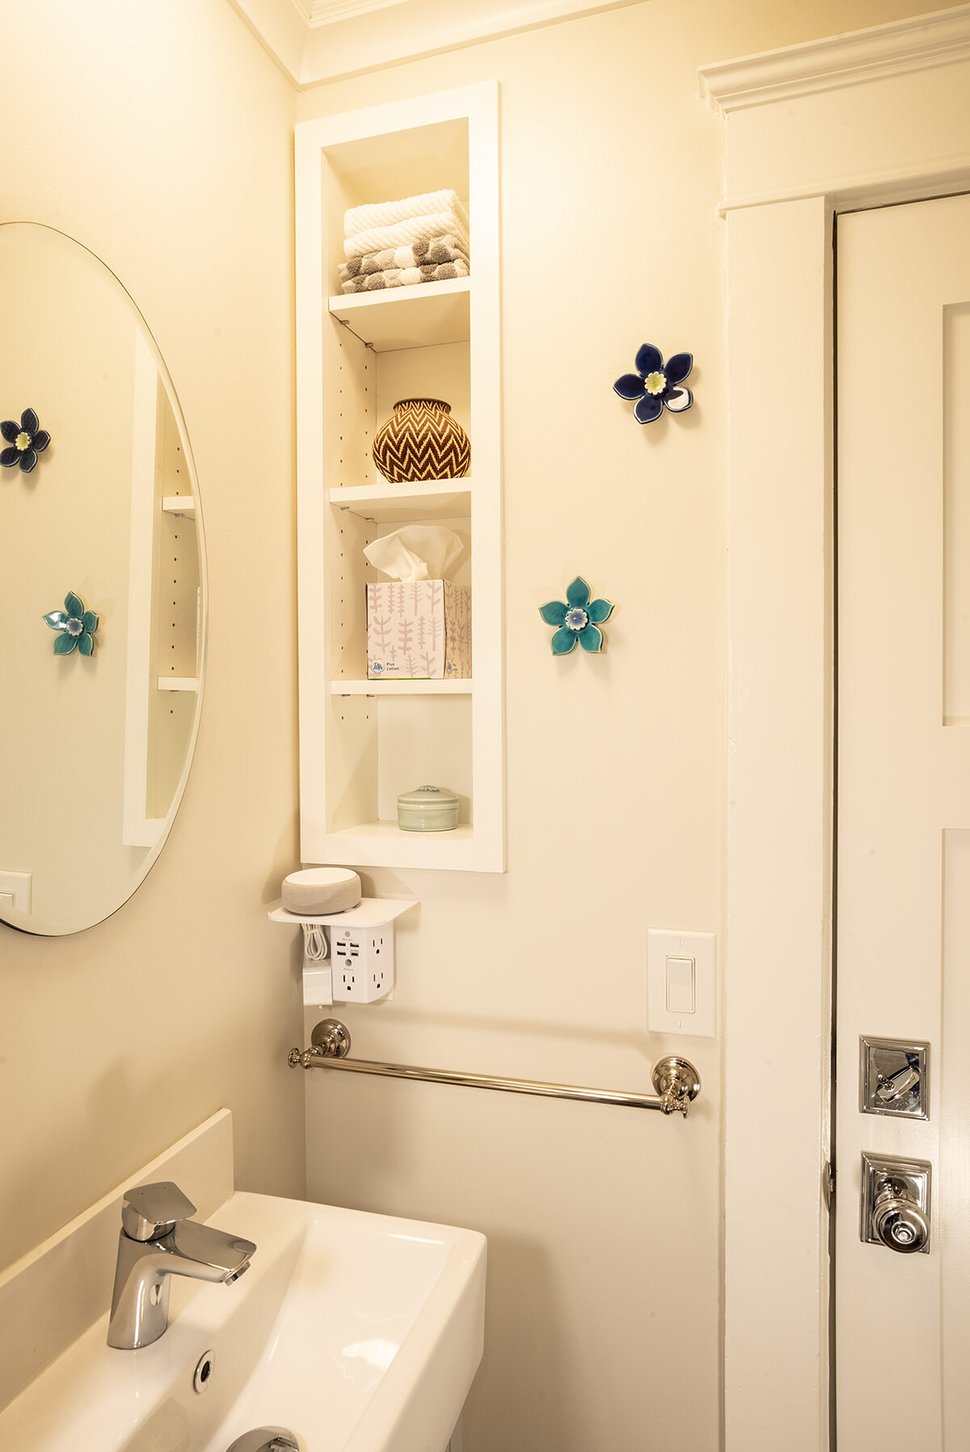 Custom storage shelf and circular mirror in bathroom remodel